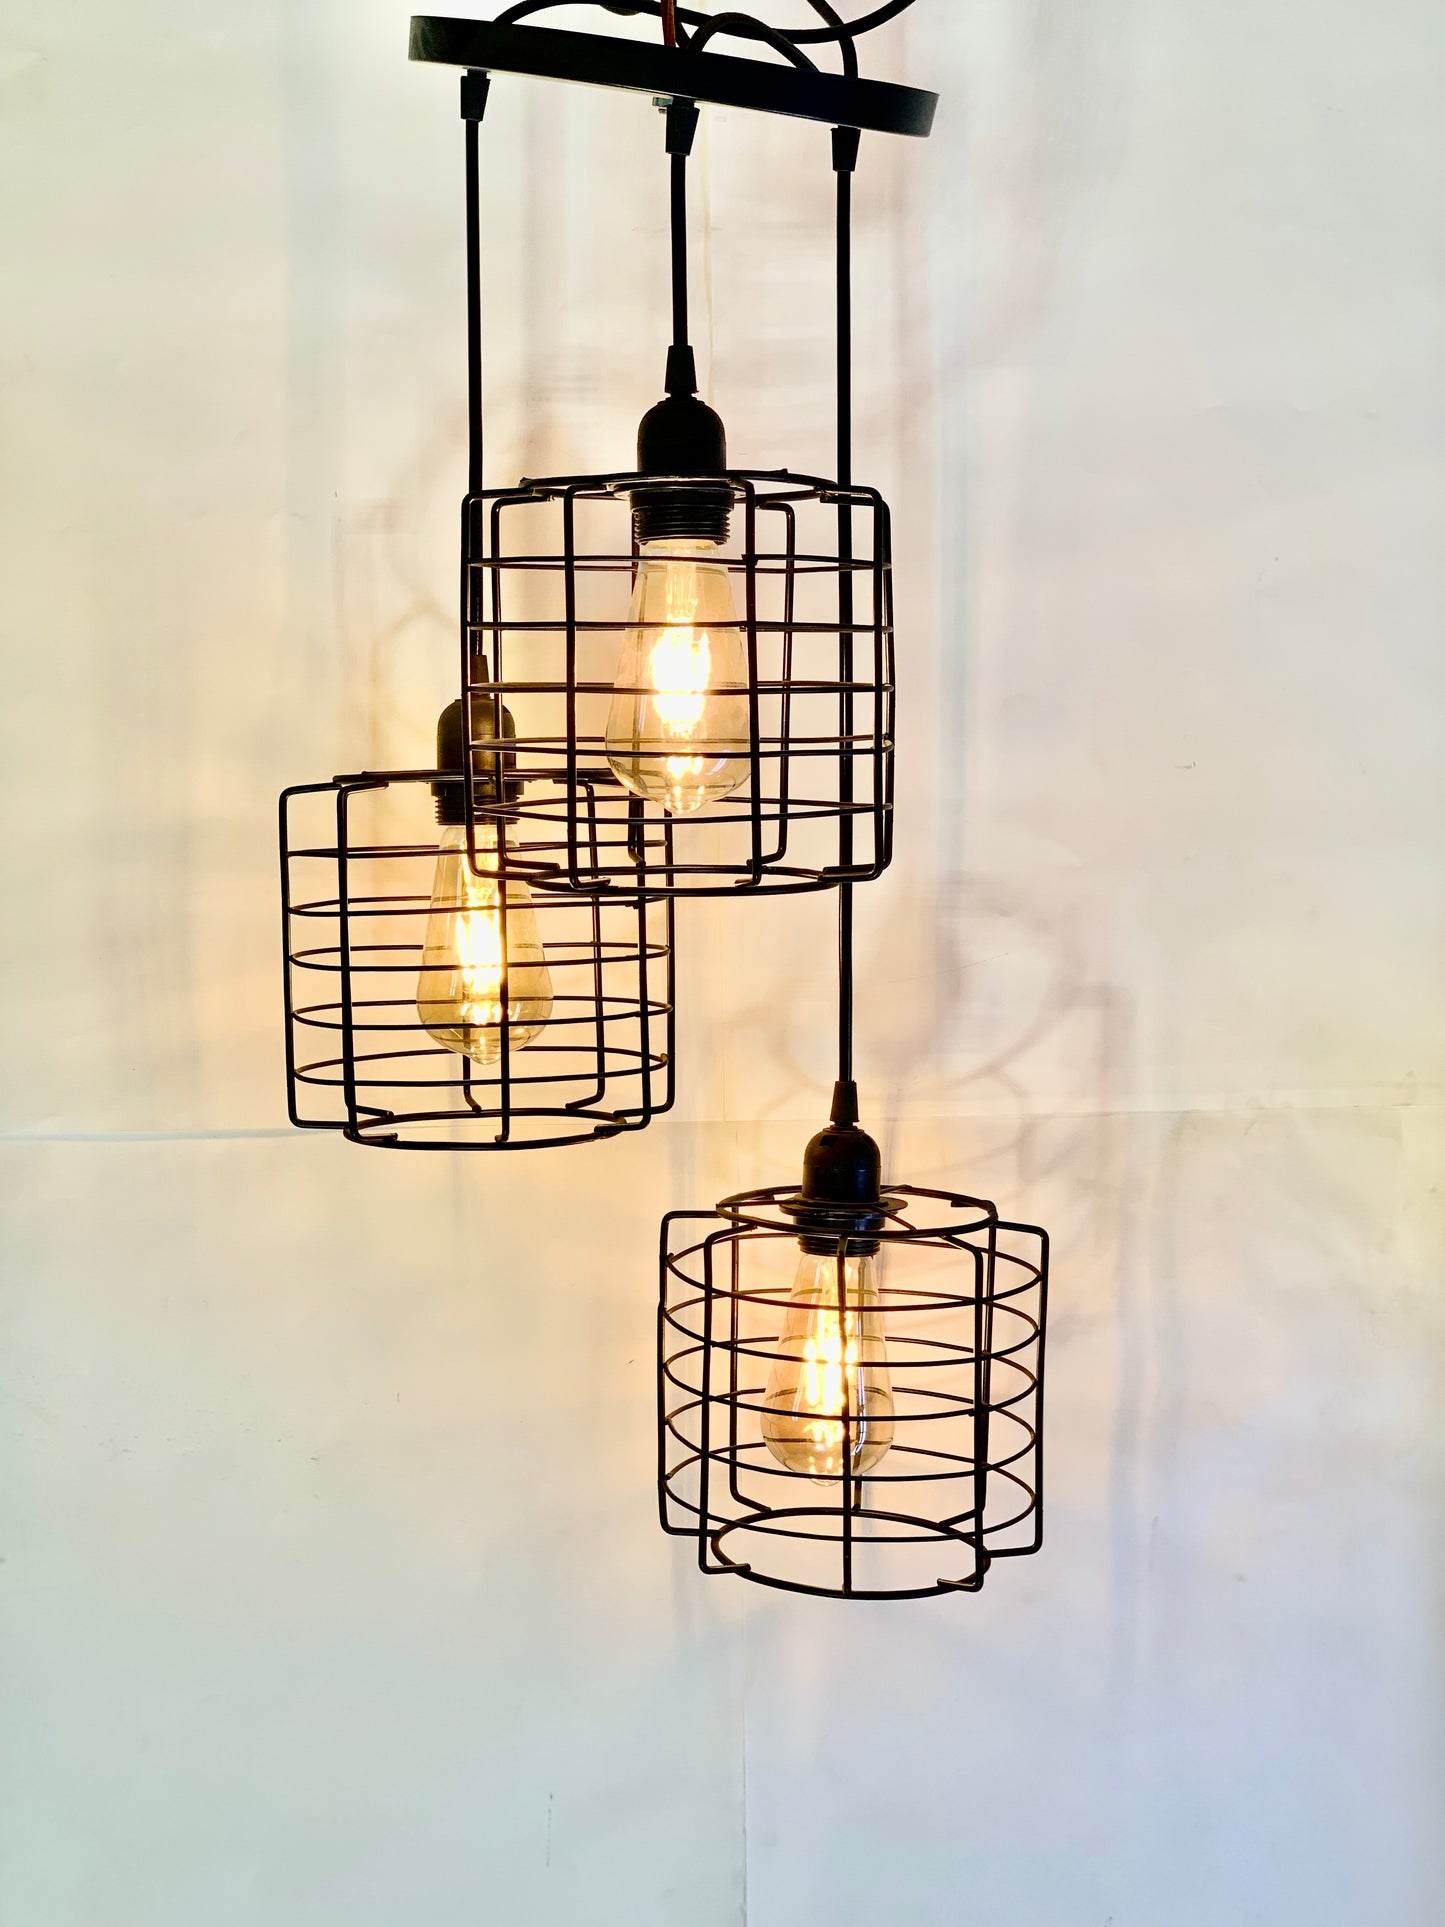 SKU: 330-Lantern Cage Metallic Hanging Light